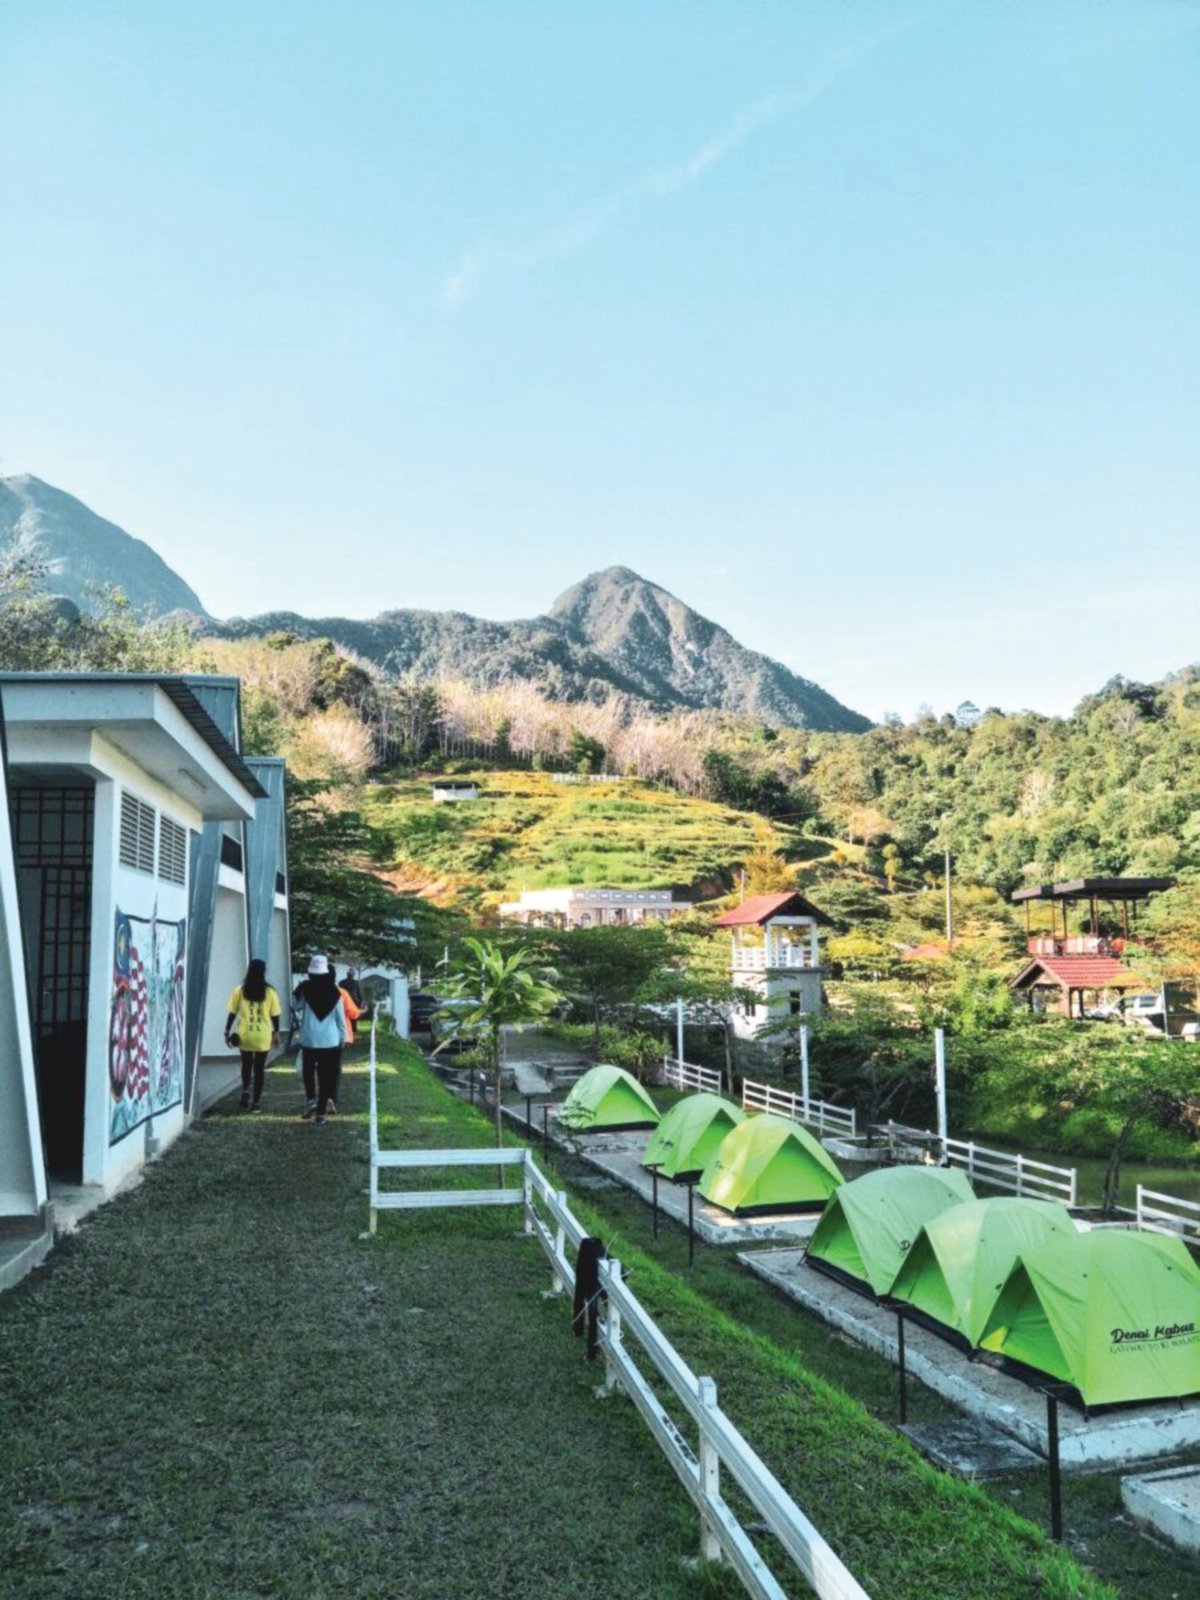 DENAI Kabus mempunyai pemandangan menarik berlatarkan ‘The Twin Sisters of Hulu Perak,’ Gunung Kenderong dan Kerunai.